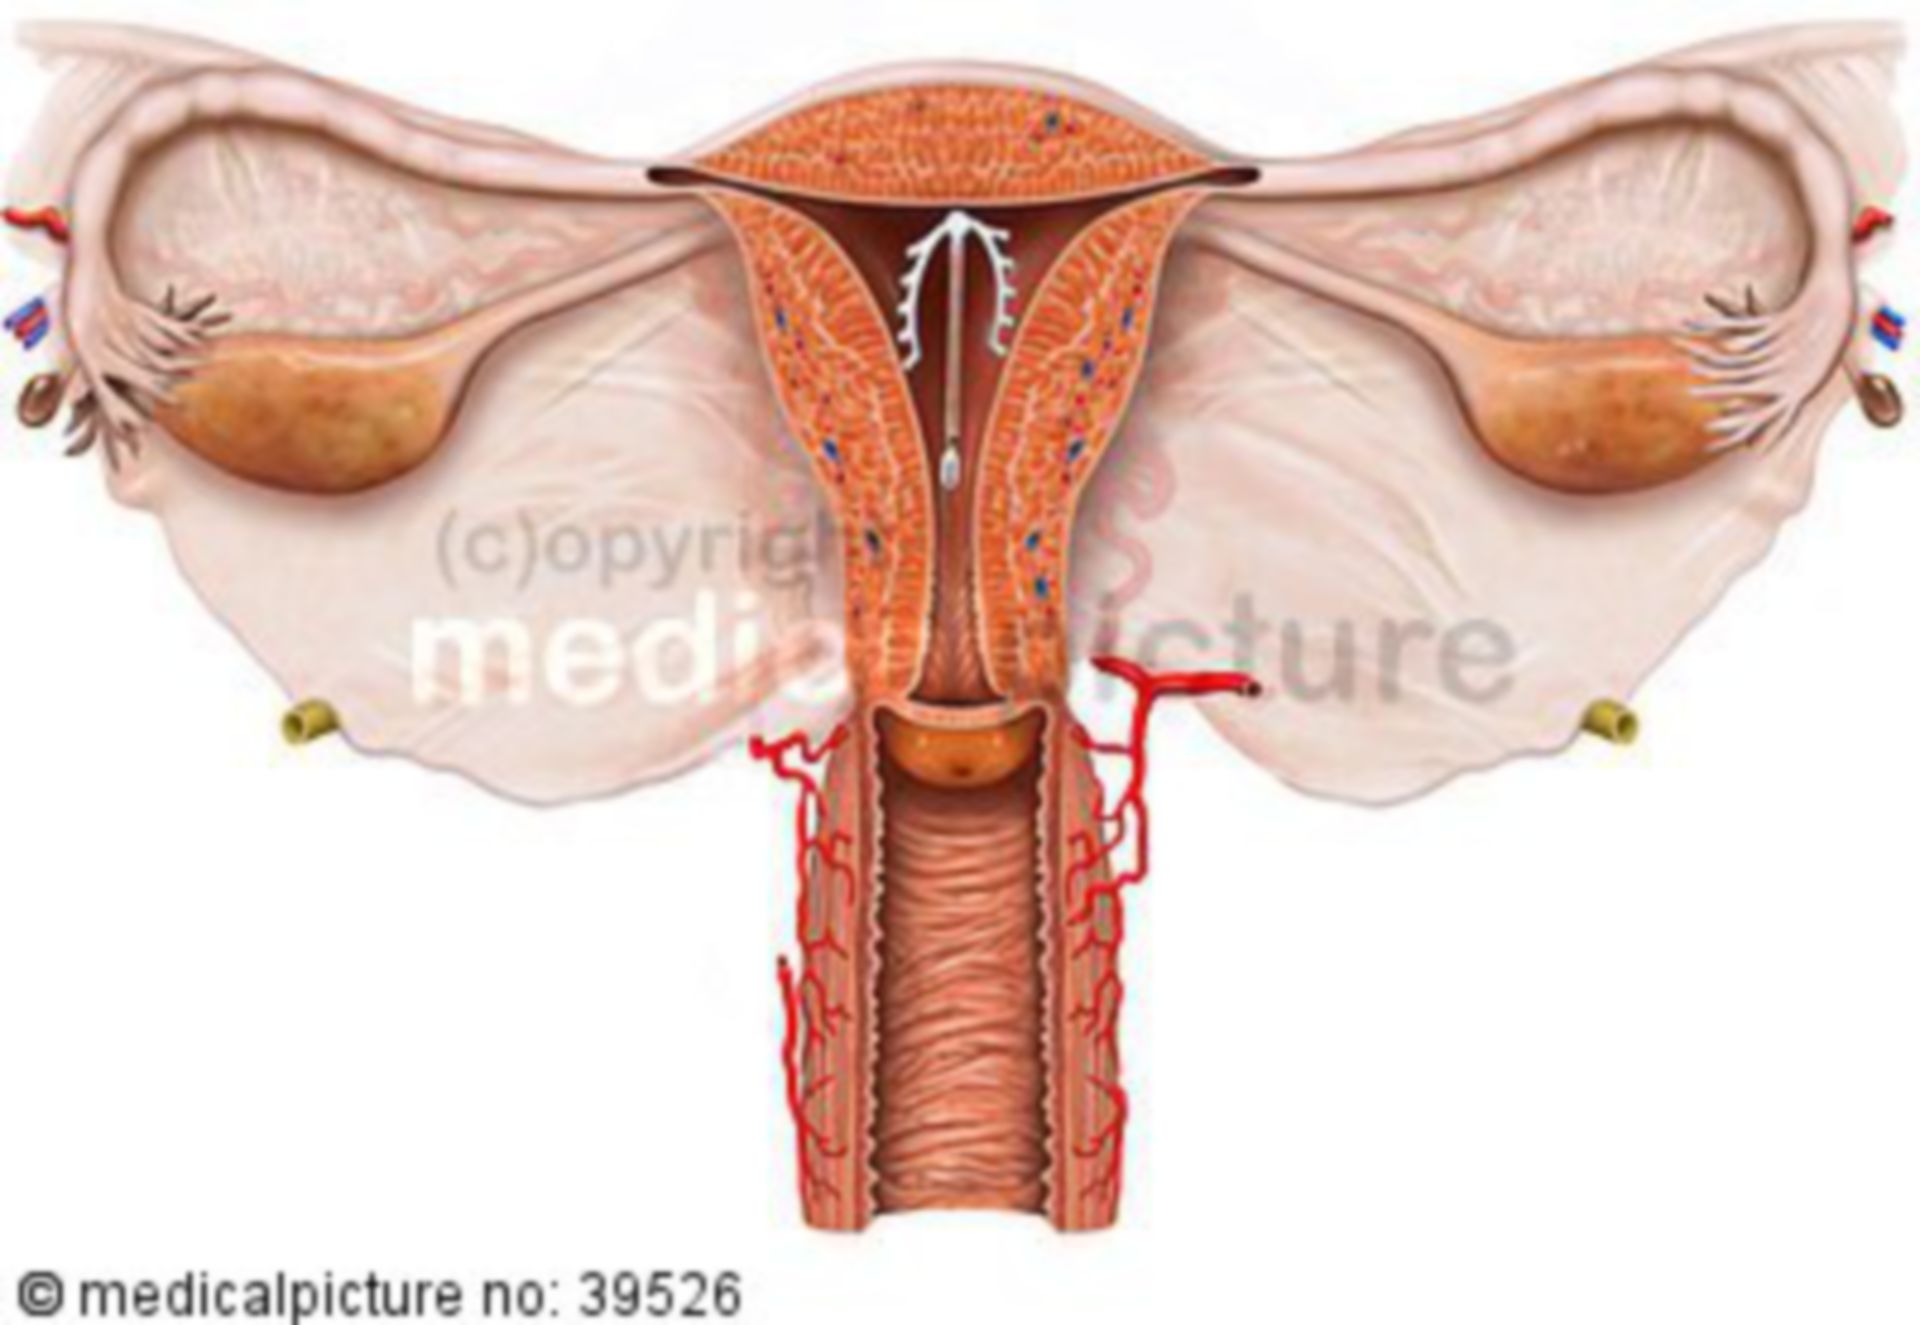 IUD - Contraception